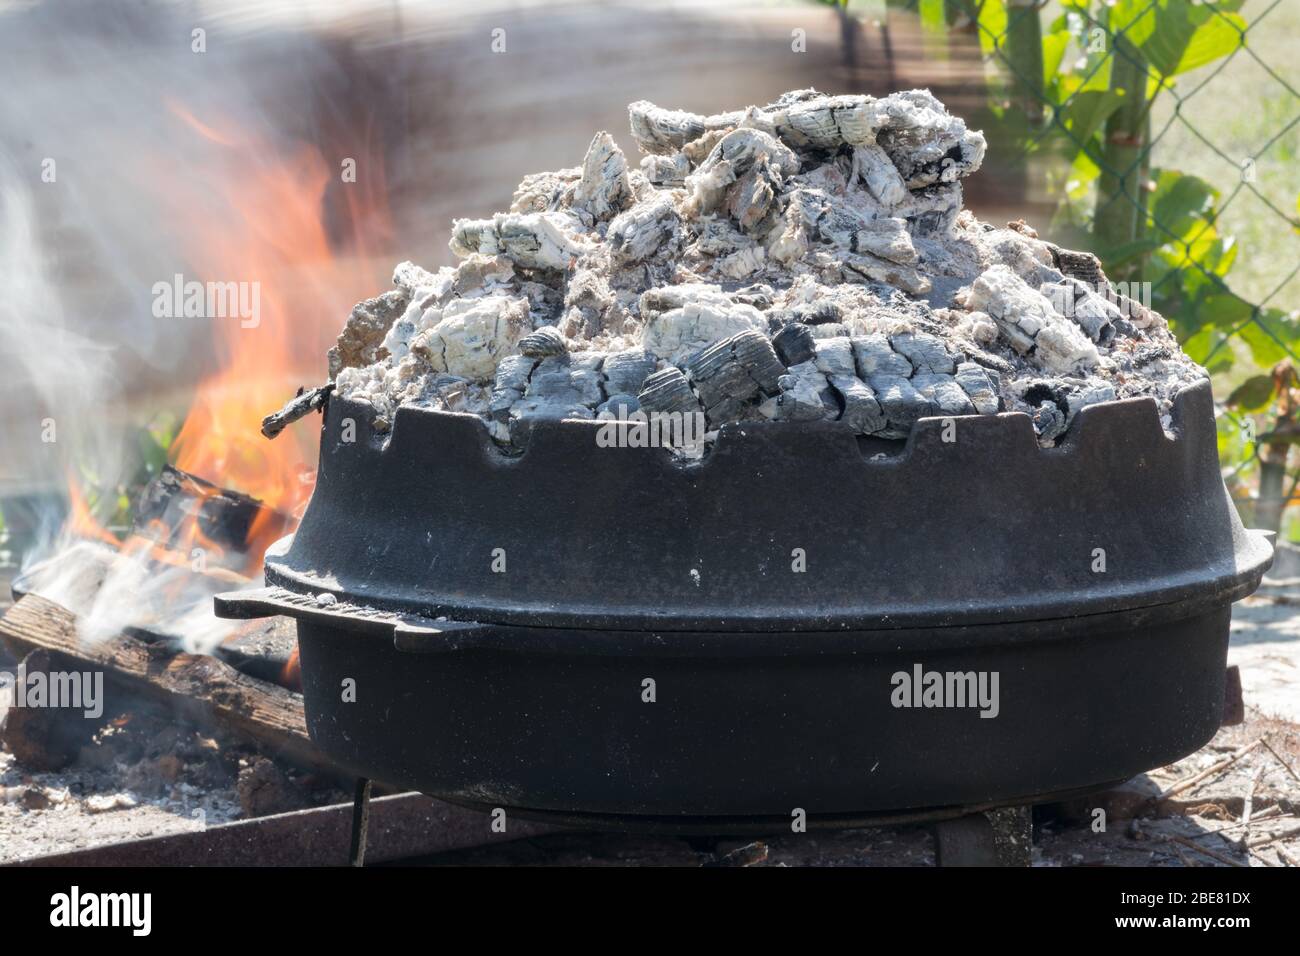 Cucina di tradizionale pasto croato Peka in pentole di metallo chiamato  sac, sach o sache. Camino con fuoco aperto e bruciare le costine.  L'ingrediente preparato Foto stock - Alamy